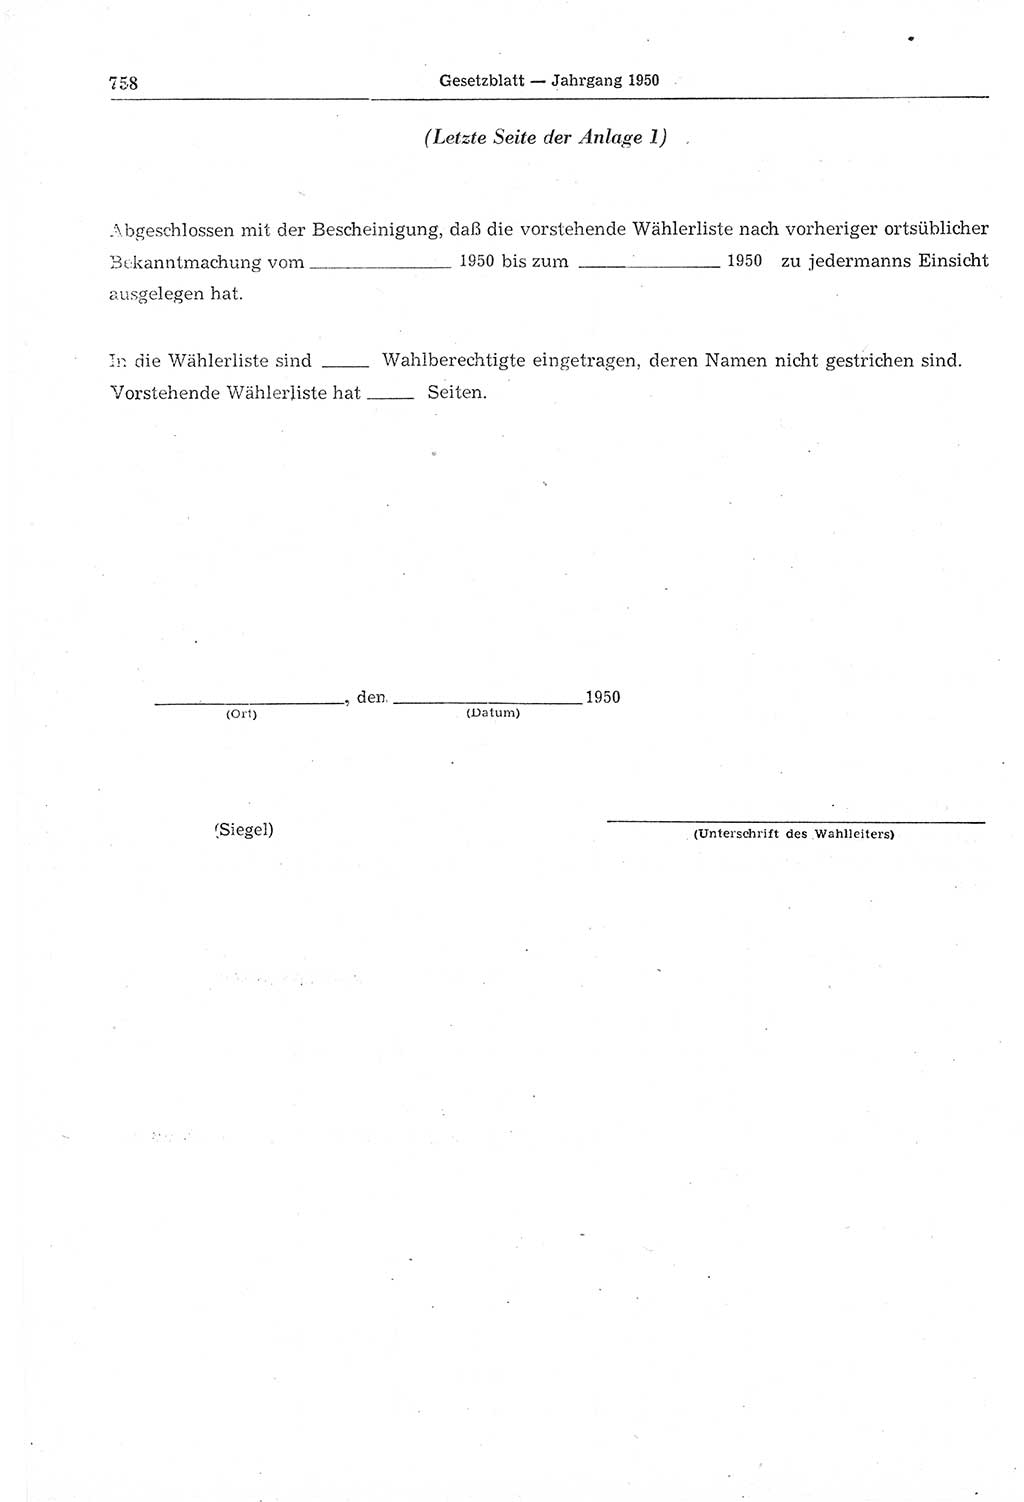 Gesetzblatt (GBl.) der Deutschen Demokratischen Republik (DDR) 1950, Seite 758 (GBl. DDR 1950, S. 758)